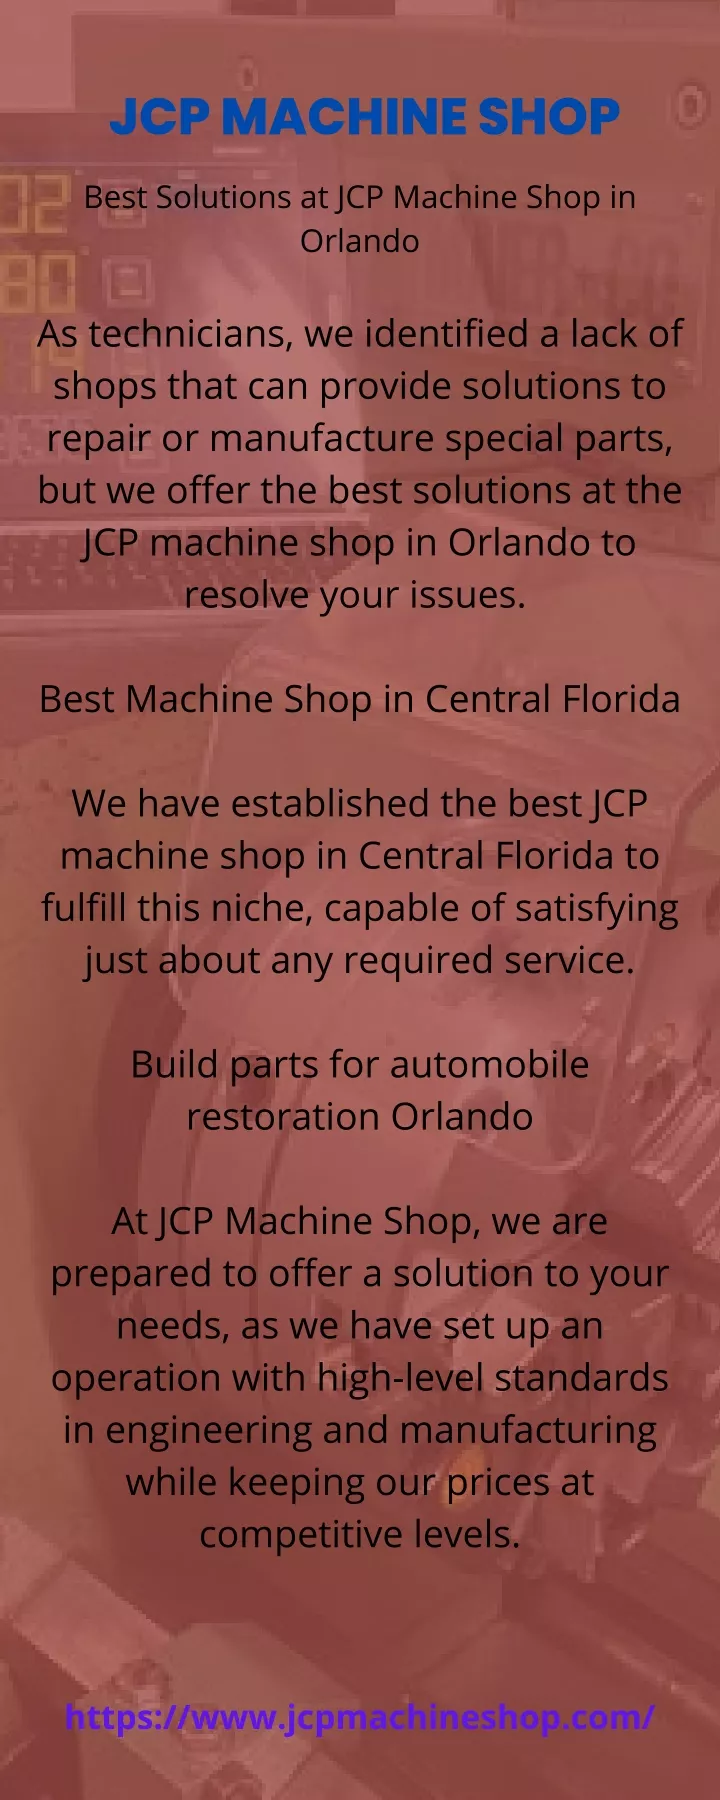 jcp machine shop